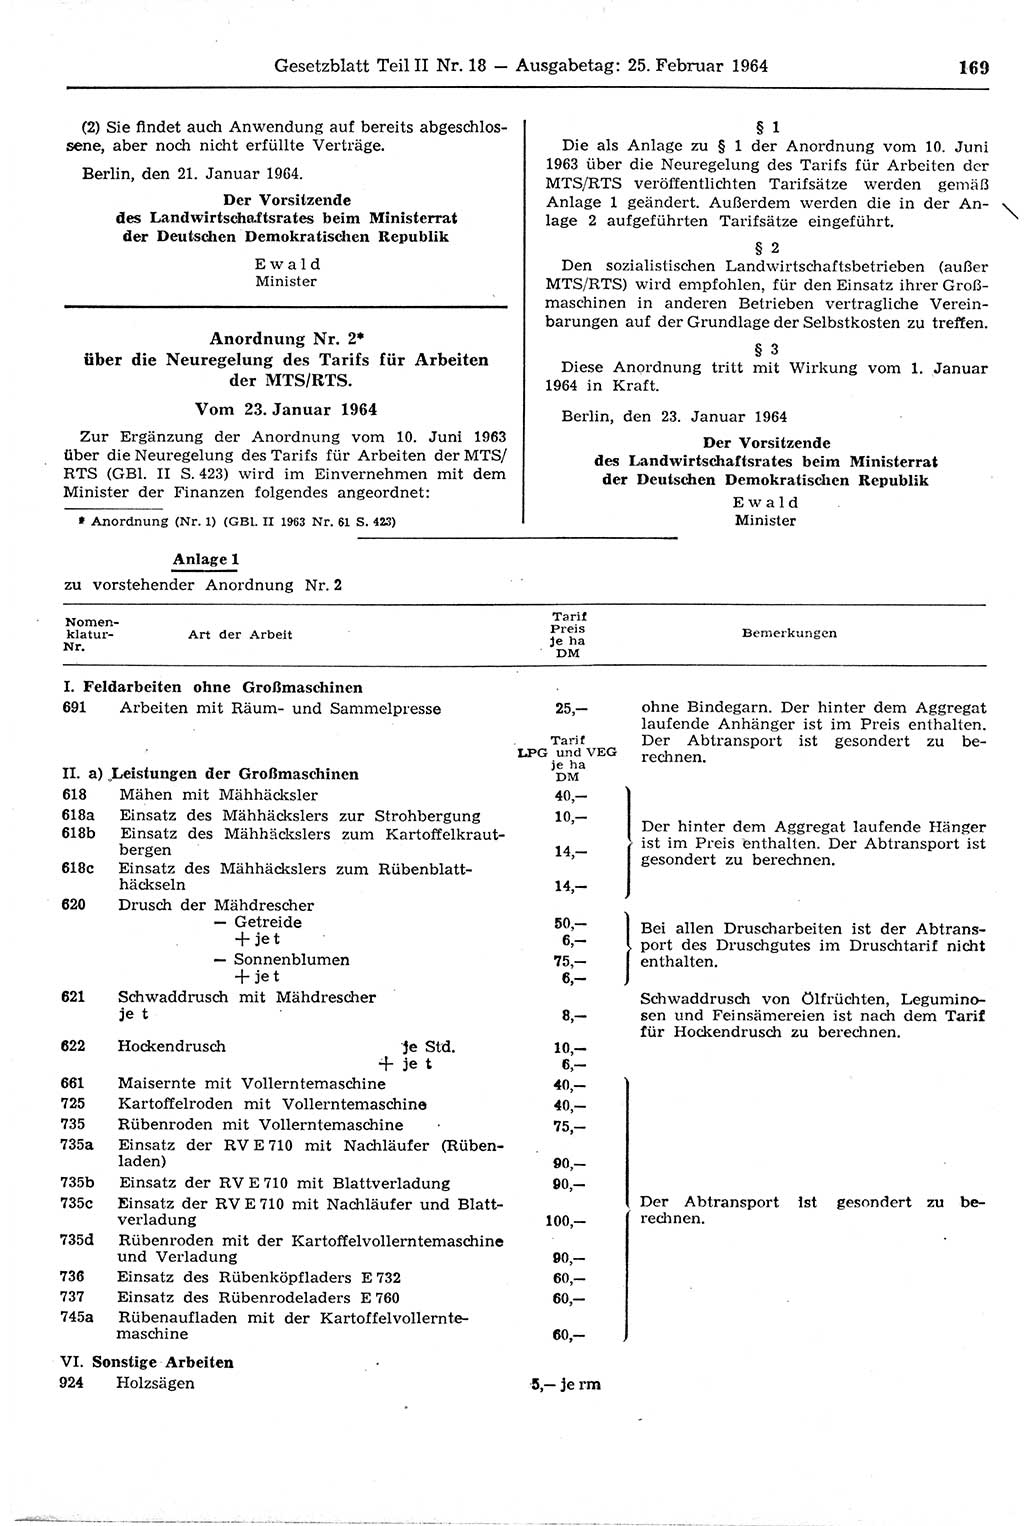 Gesetzblatt (GBl.) der Deutschen Demokratischen Republik (DDR) Teil ⅠⅠ 1964, Seite 169 (GBl. DDR ⅠⅠ 1964, S. 169)